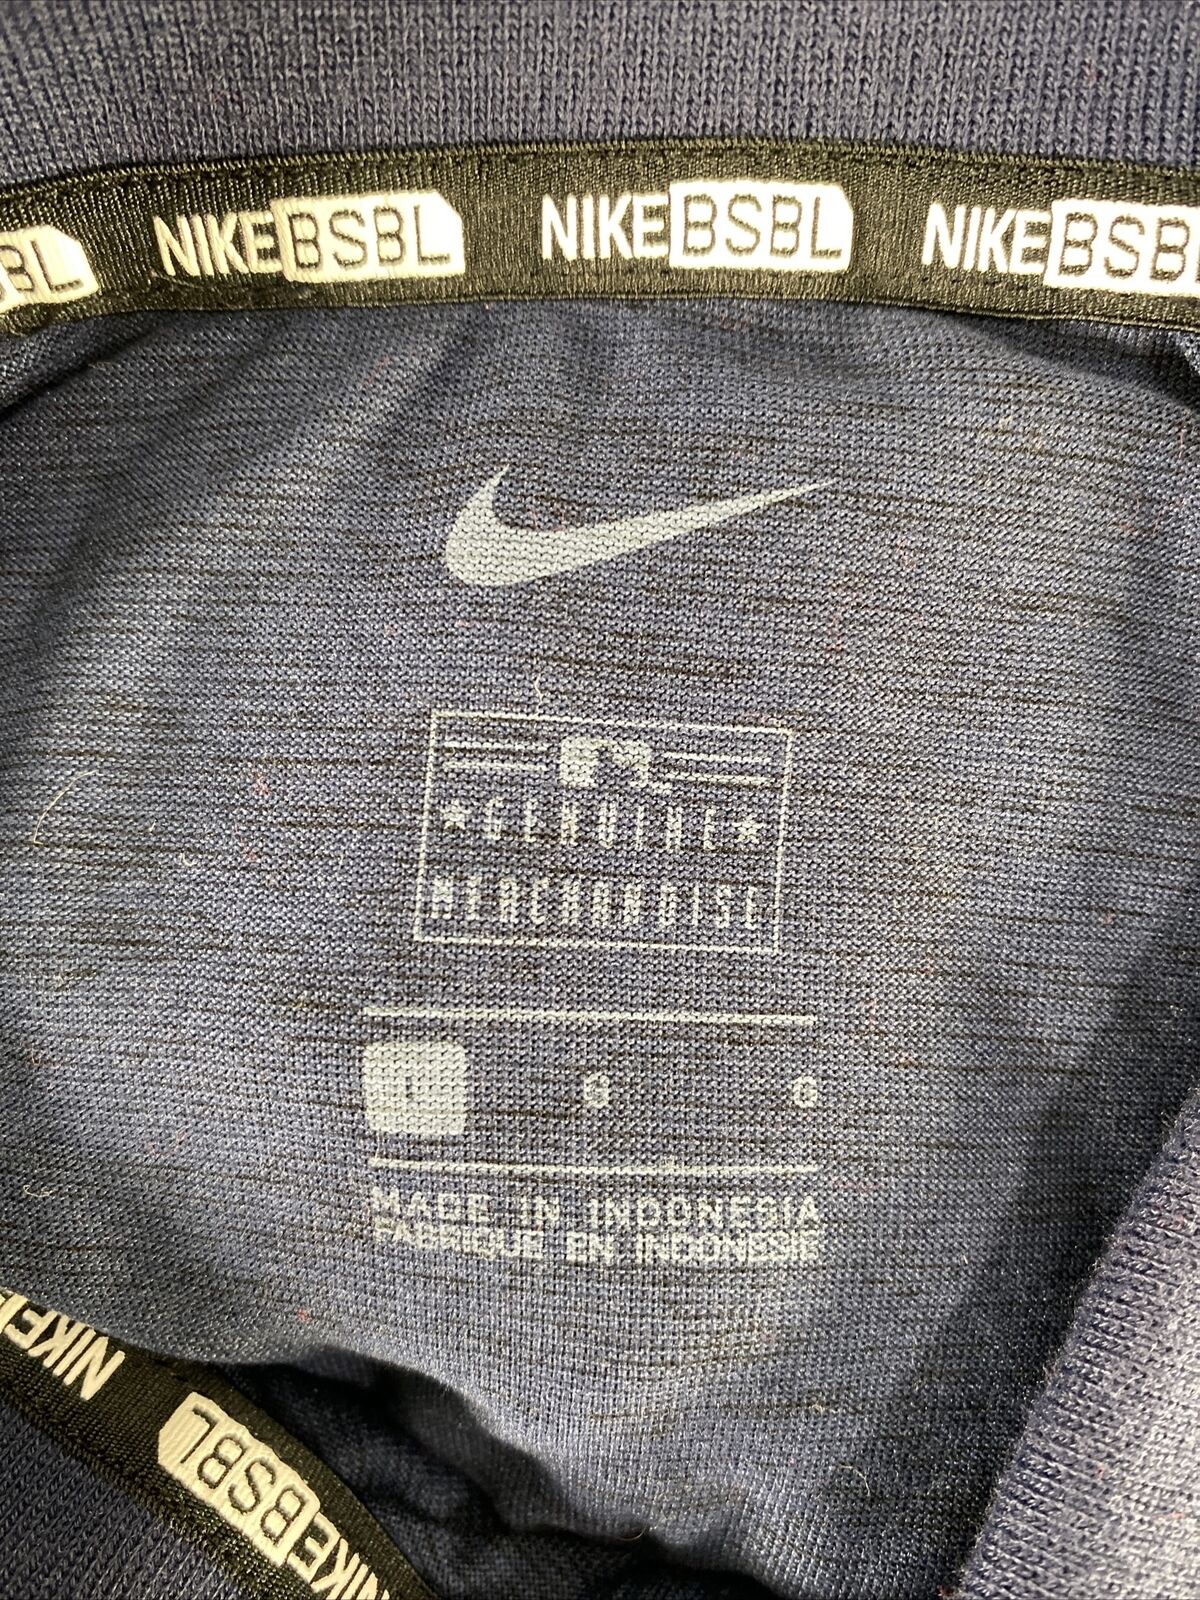 Nike BSBL Men's Blue Genuine Merchandise Detroit Tigers Polo - L